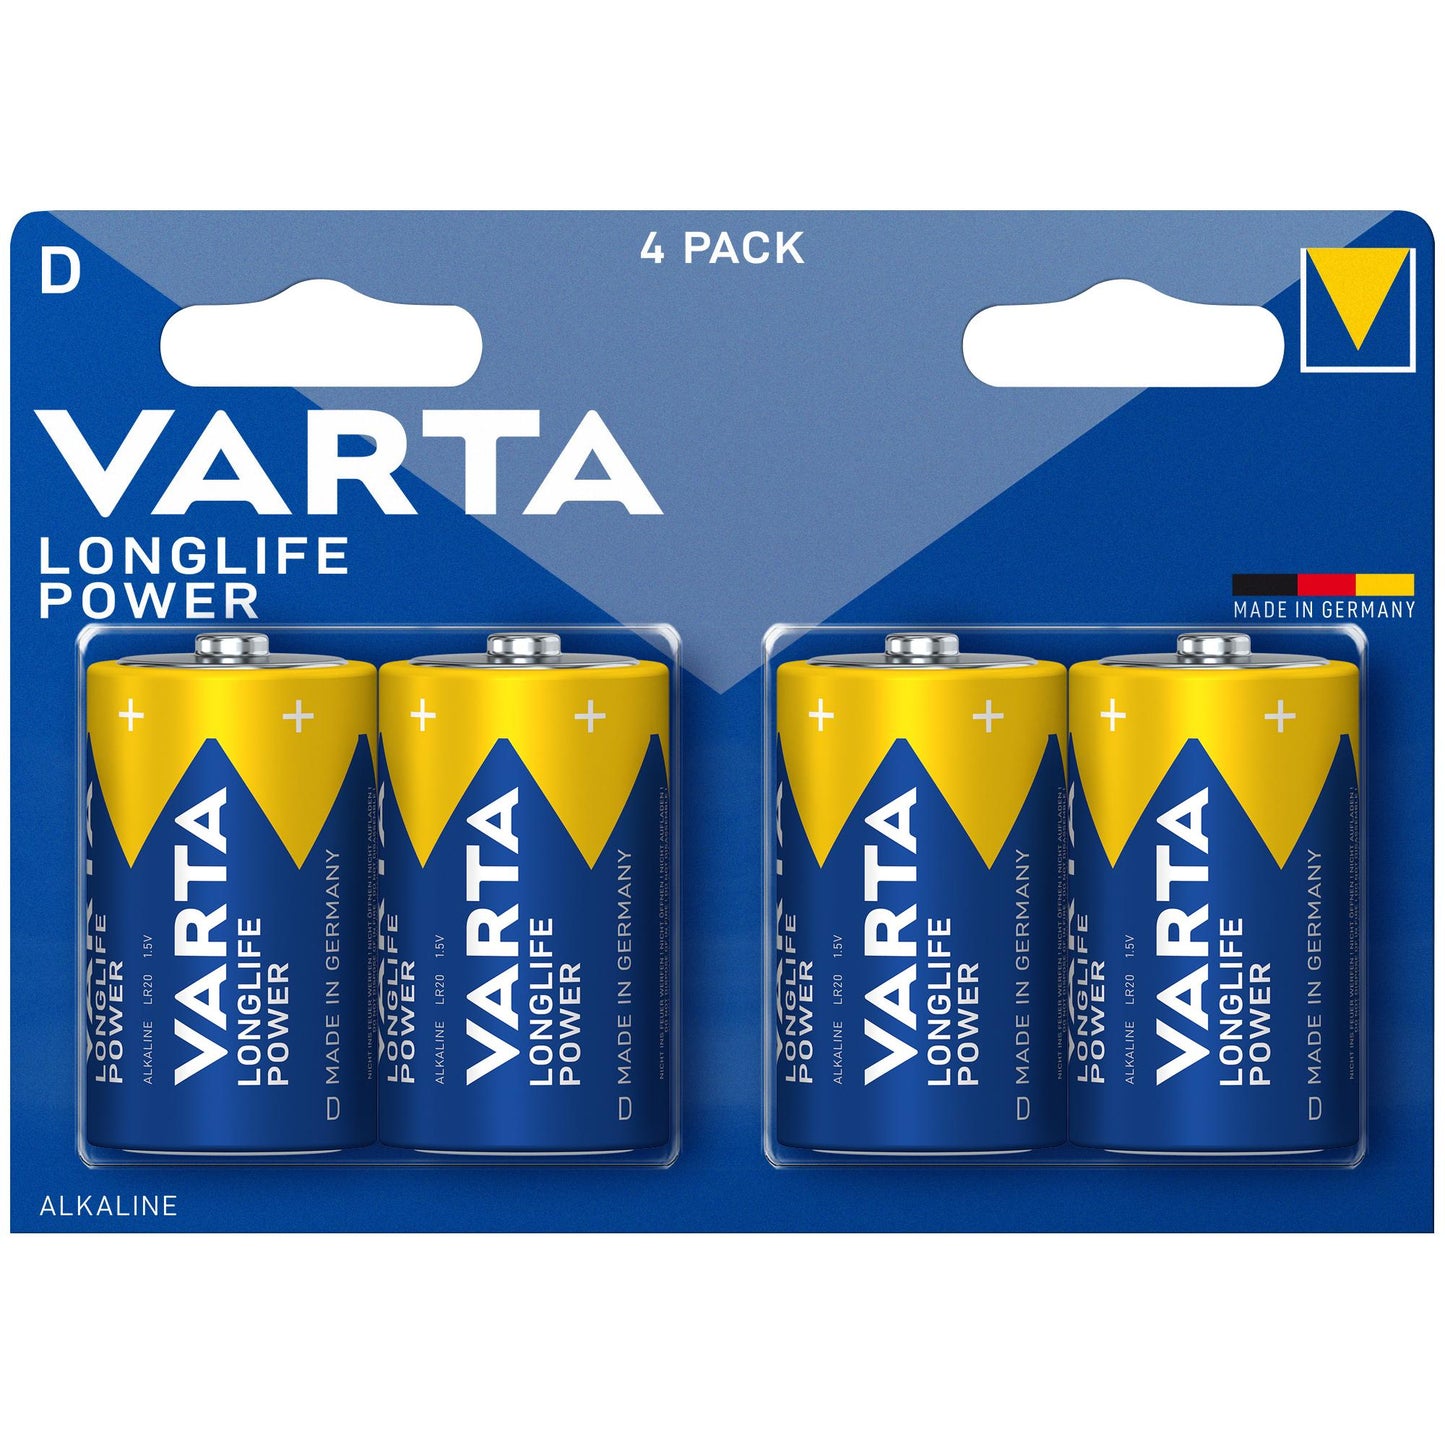 VARTA Batterie Alkaline Mono D LR20, 1.5V Longlife Power, Retail Blister (4-Pack)